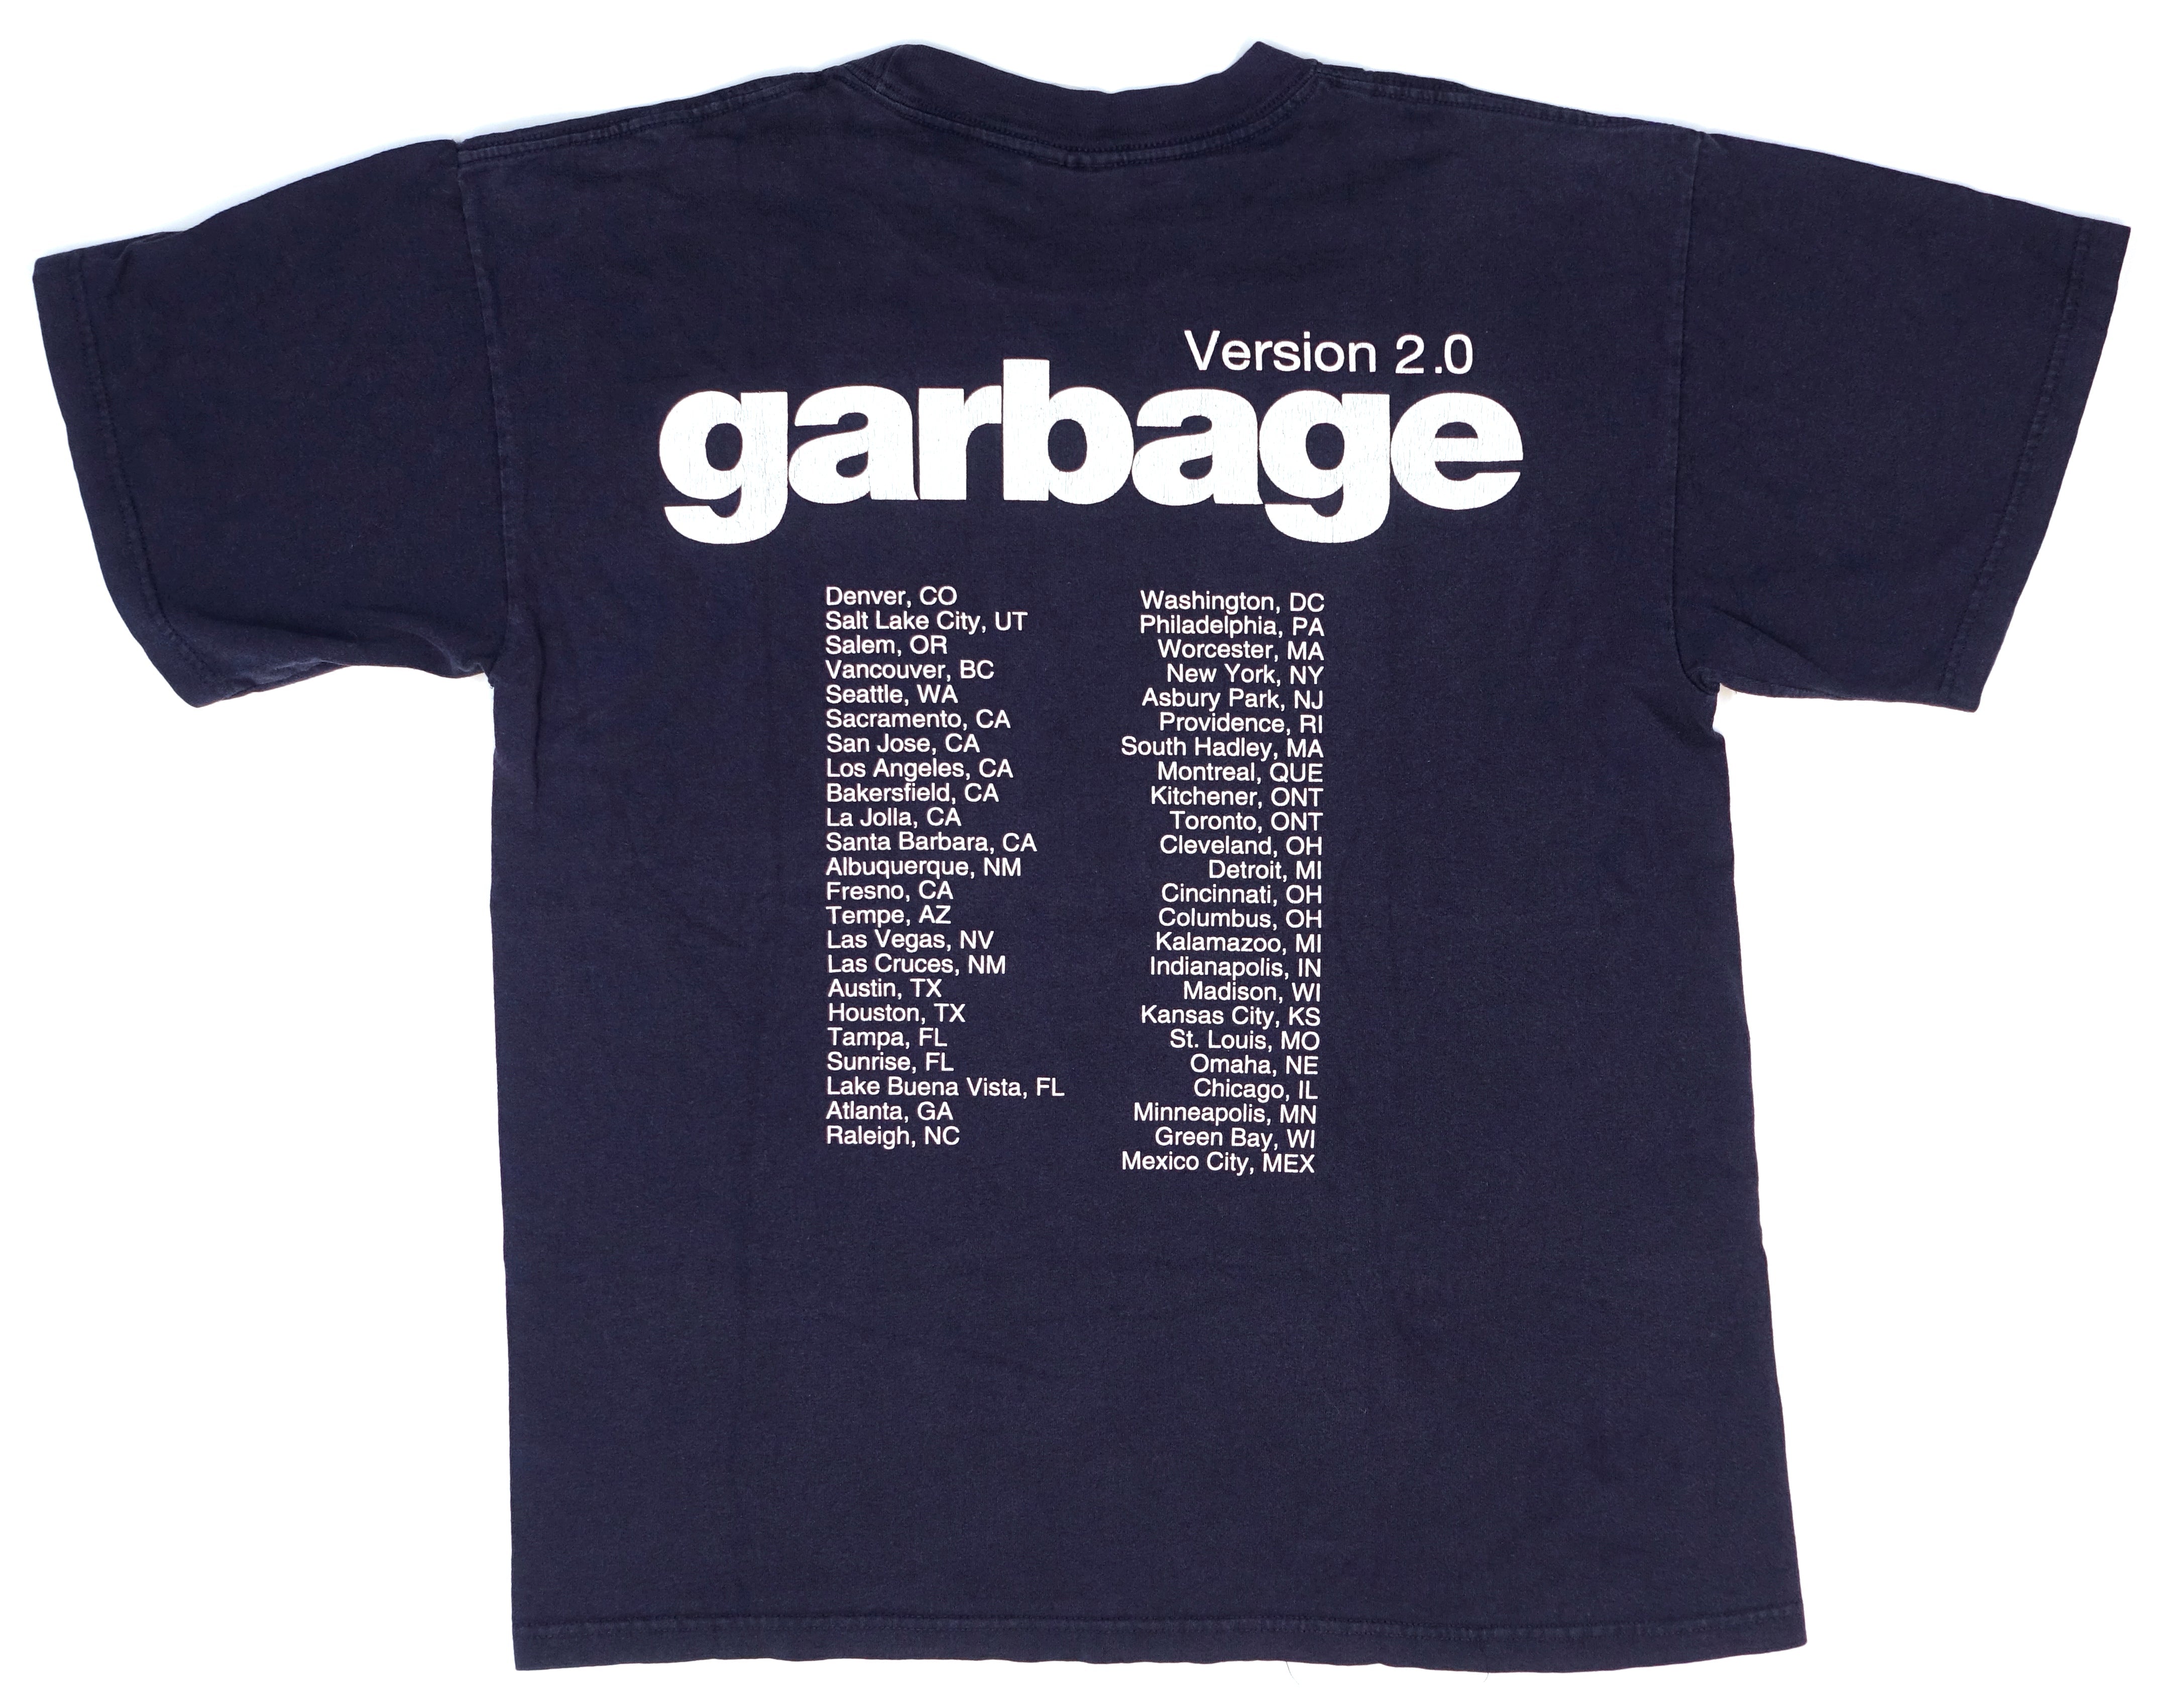 Garbage - Version 2.0 1998 World Tour Shirt Size Large